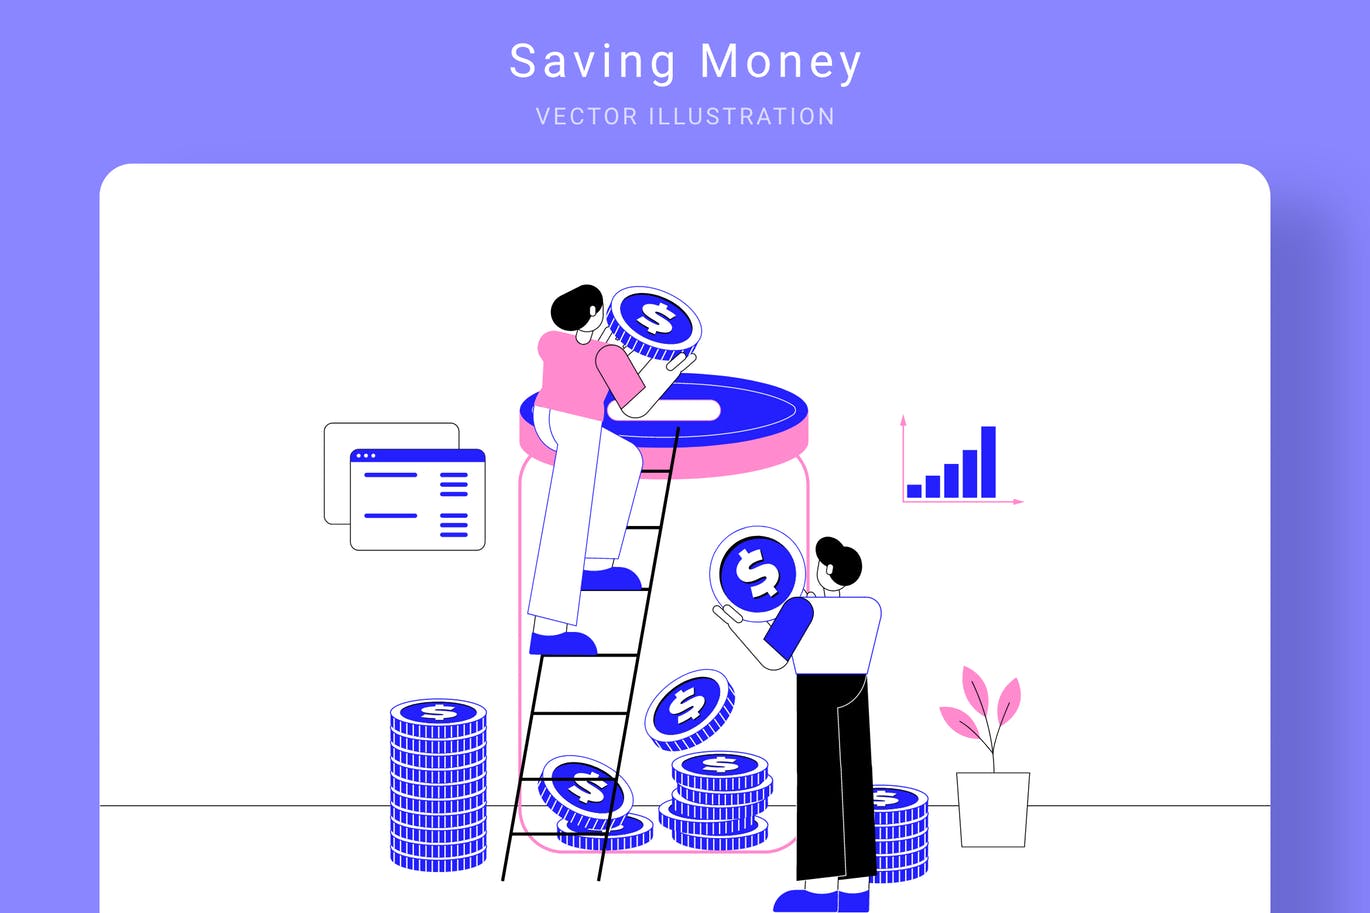 存钱计划主题矢量素材库精选概念插画素材 Saving Money Vector Illustration插图